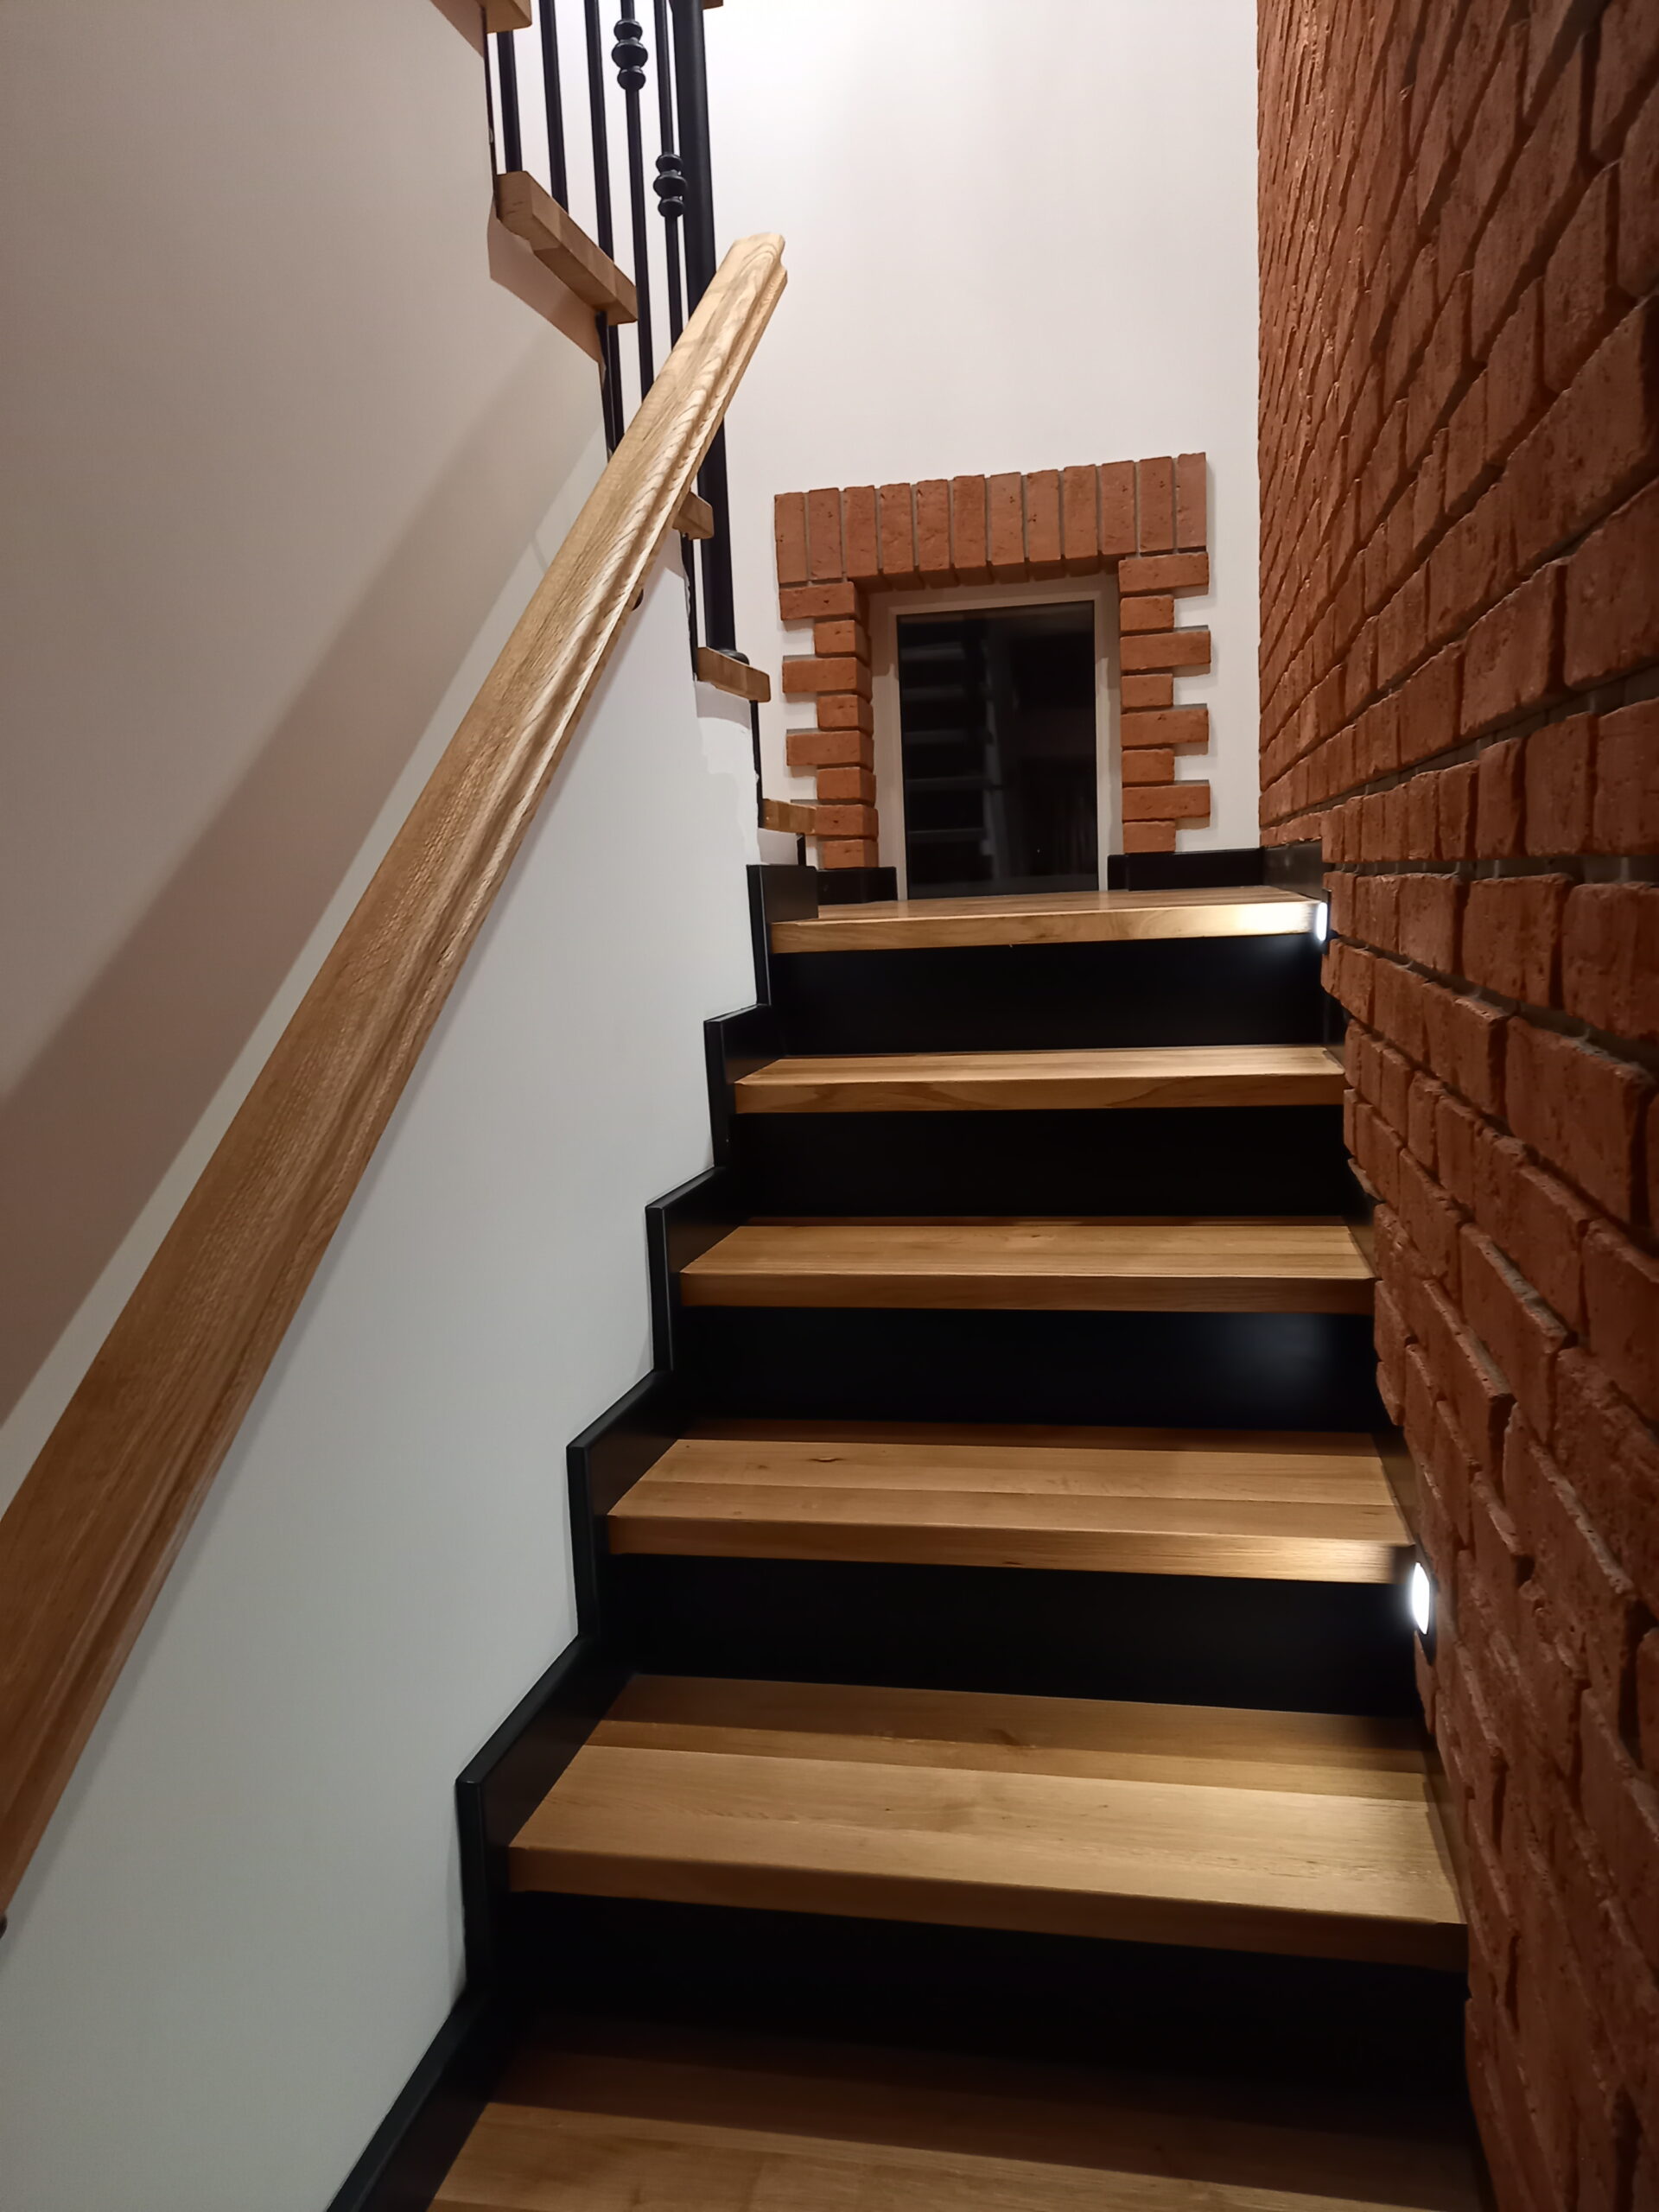 schody drewniane pic1